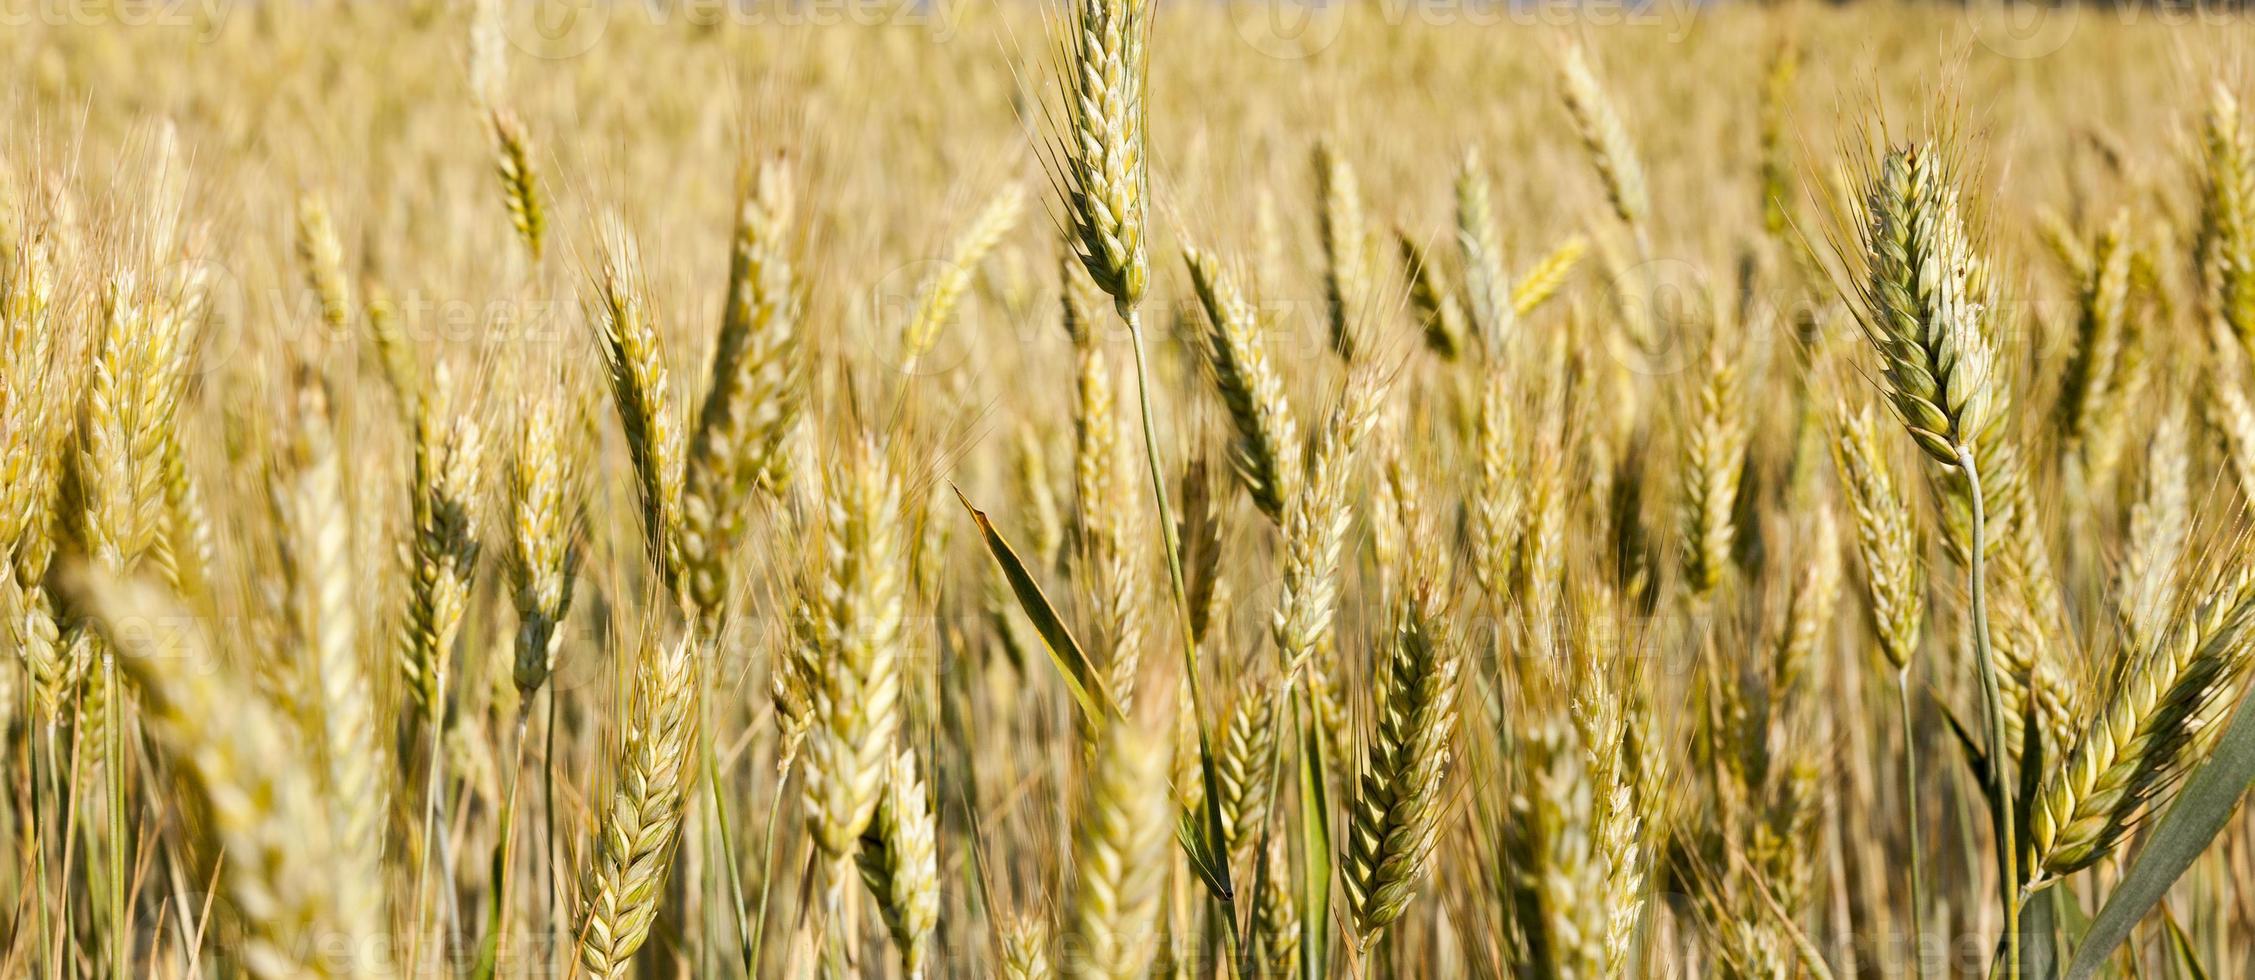 blé qui jaunit en été photo